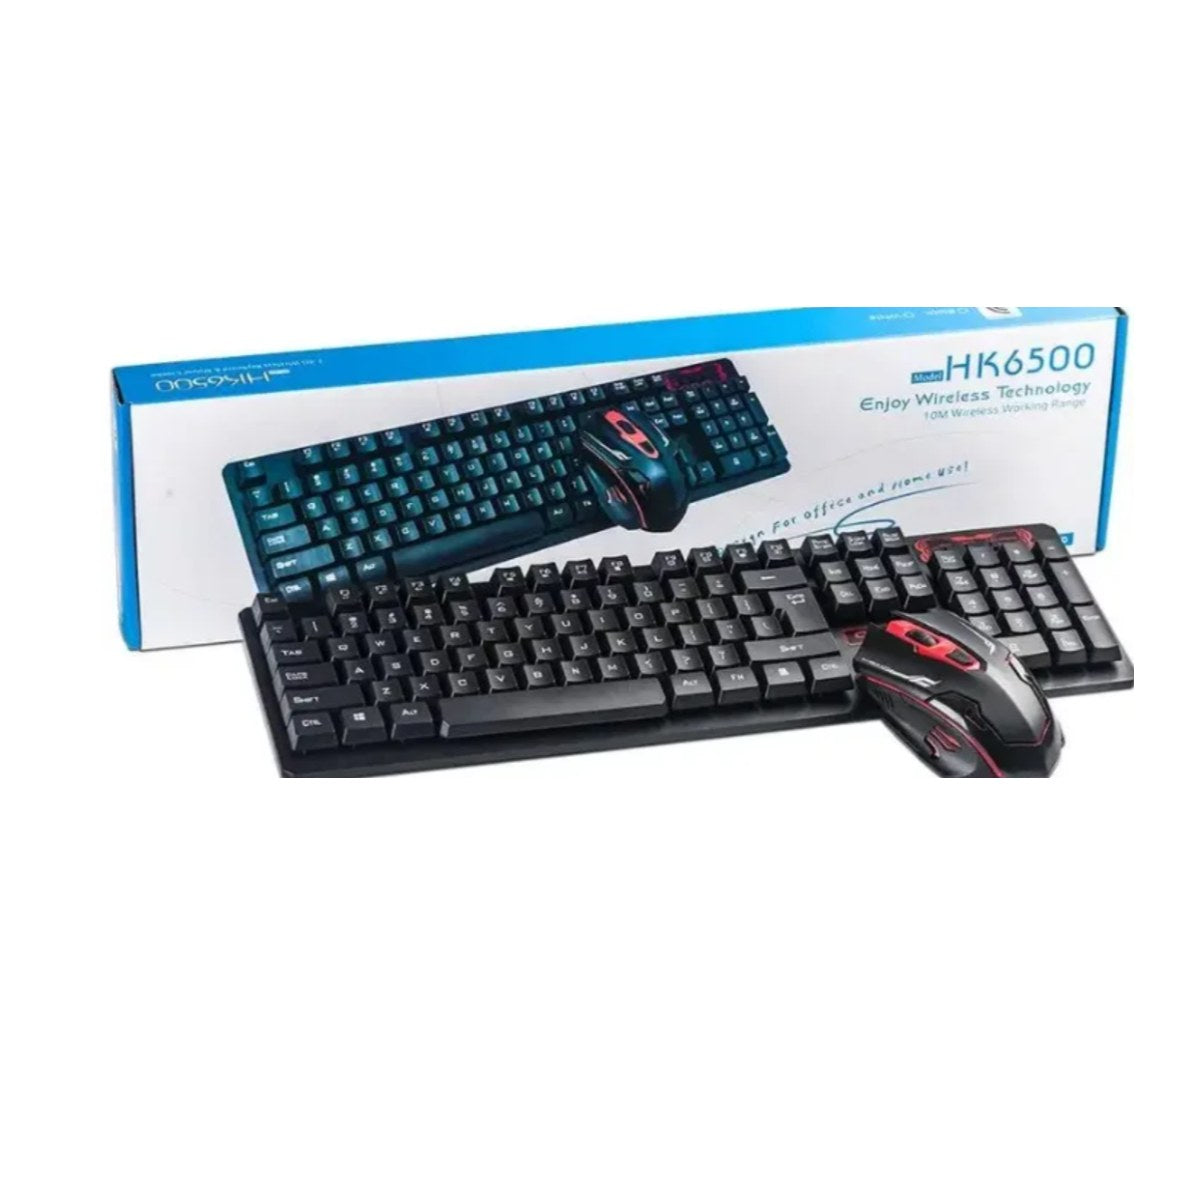 Novo HK6500 keyboard & mouse | كيبورد وماوس لاسلكي